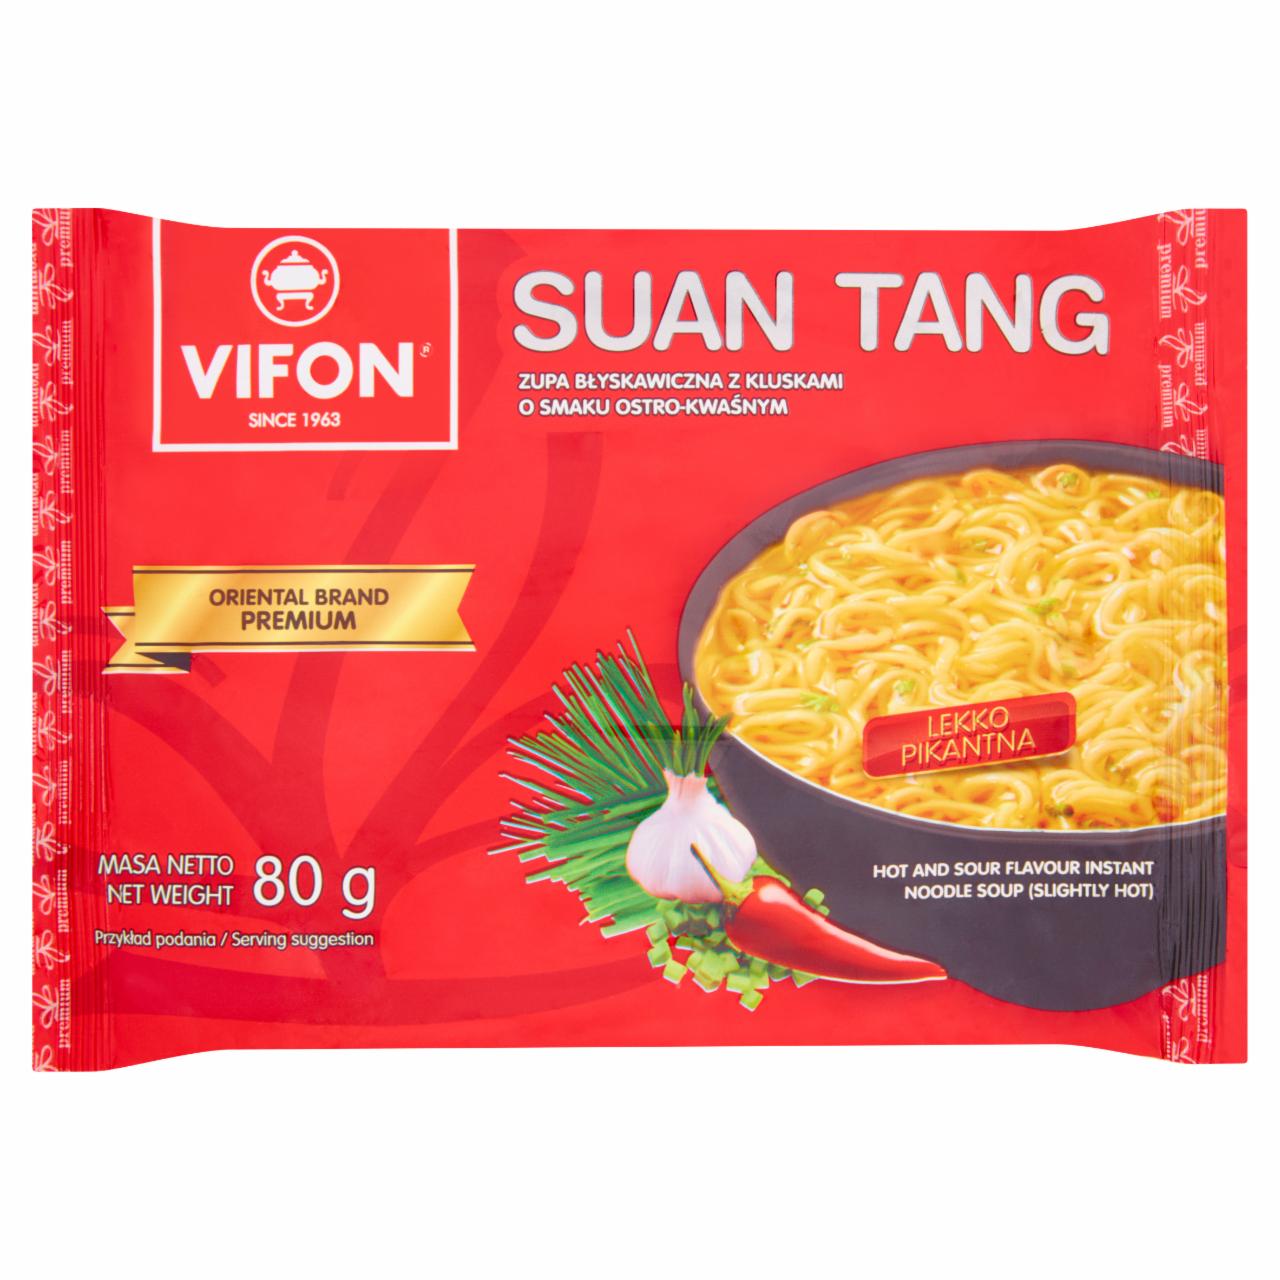 Zdjęcia - Vifon Suan Tang Zupa błyskawiczna 80 g